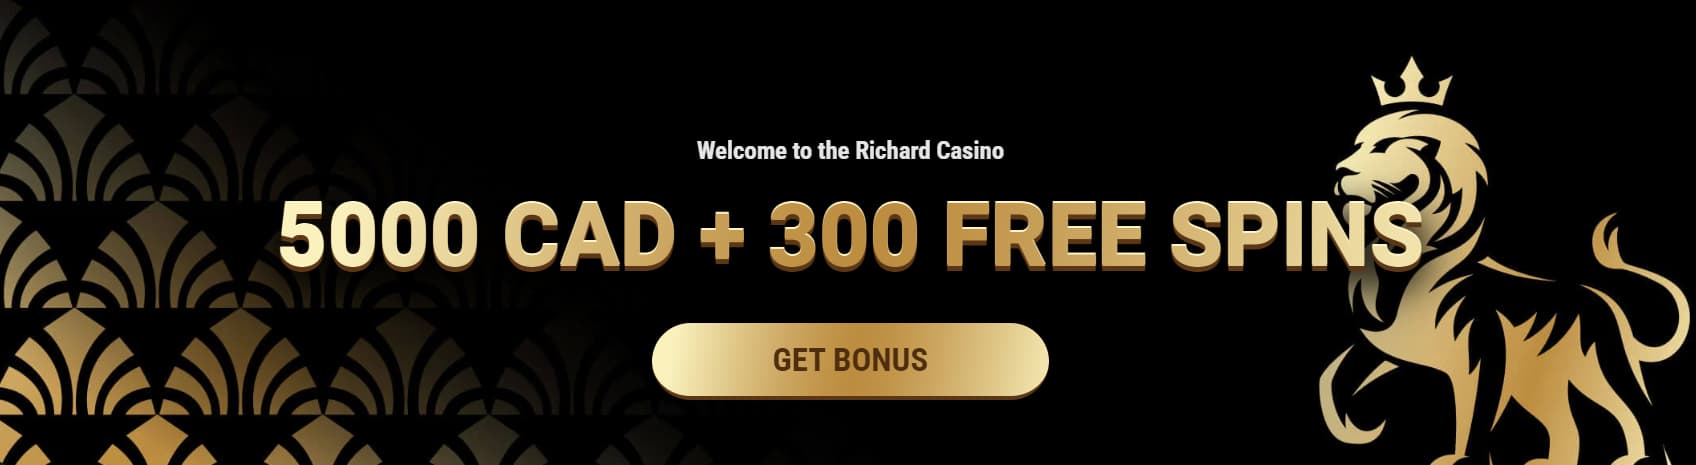 richard casino welcome bonus